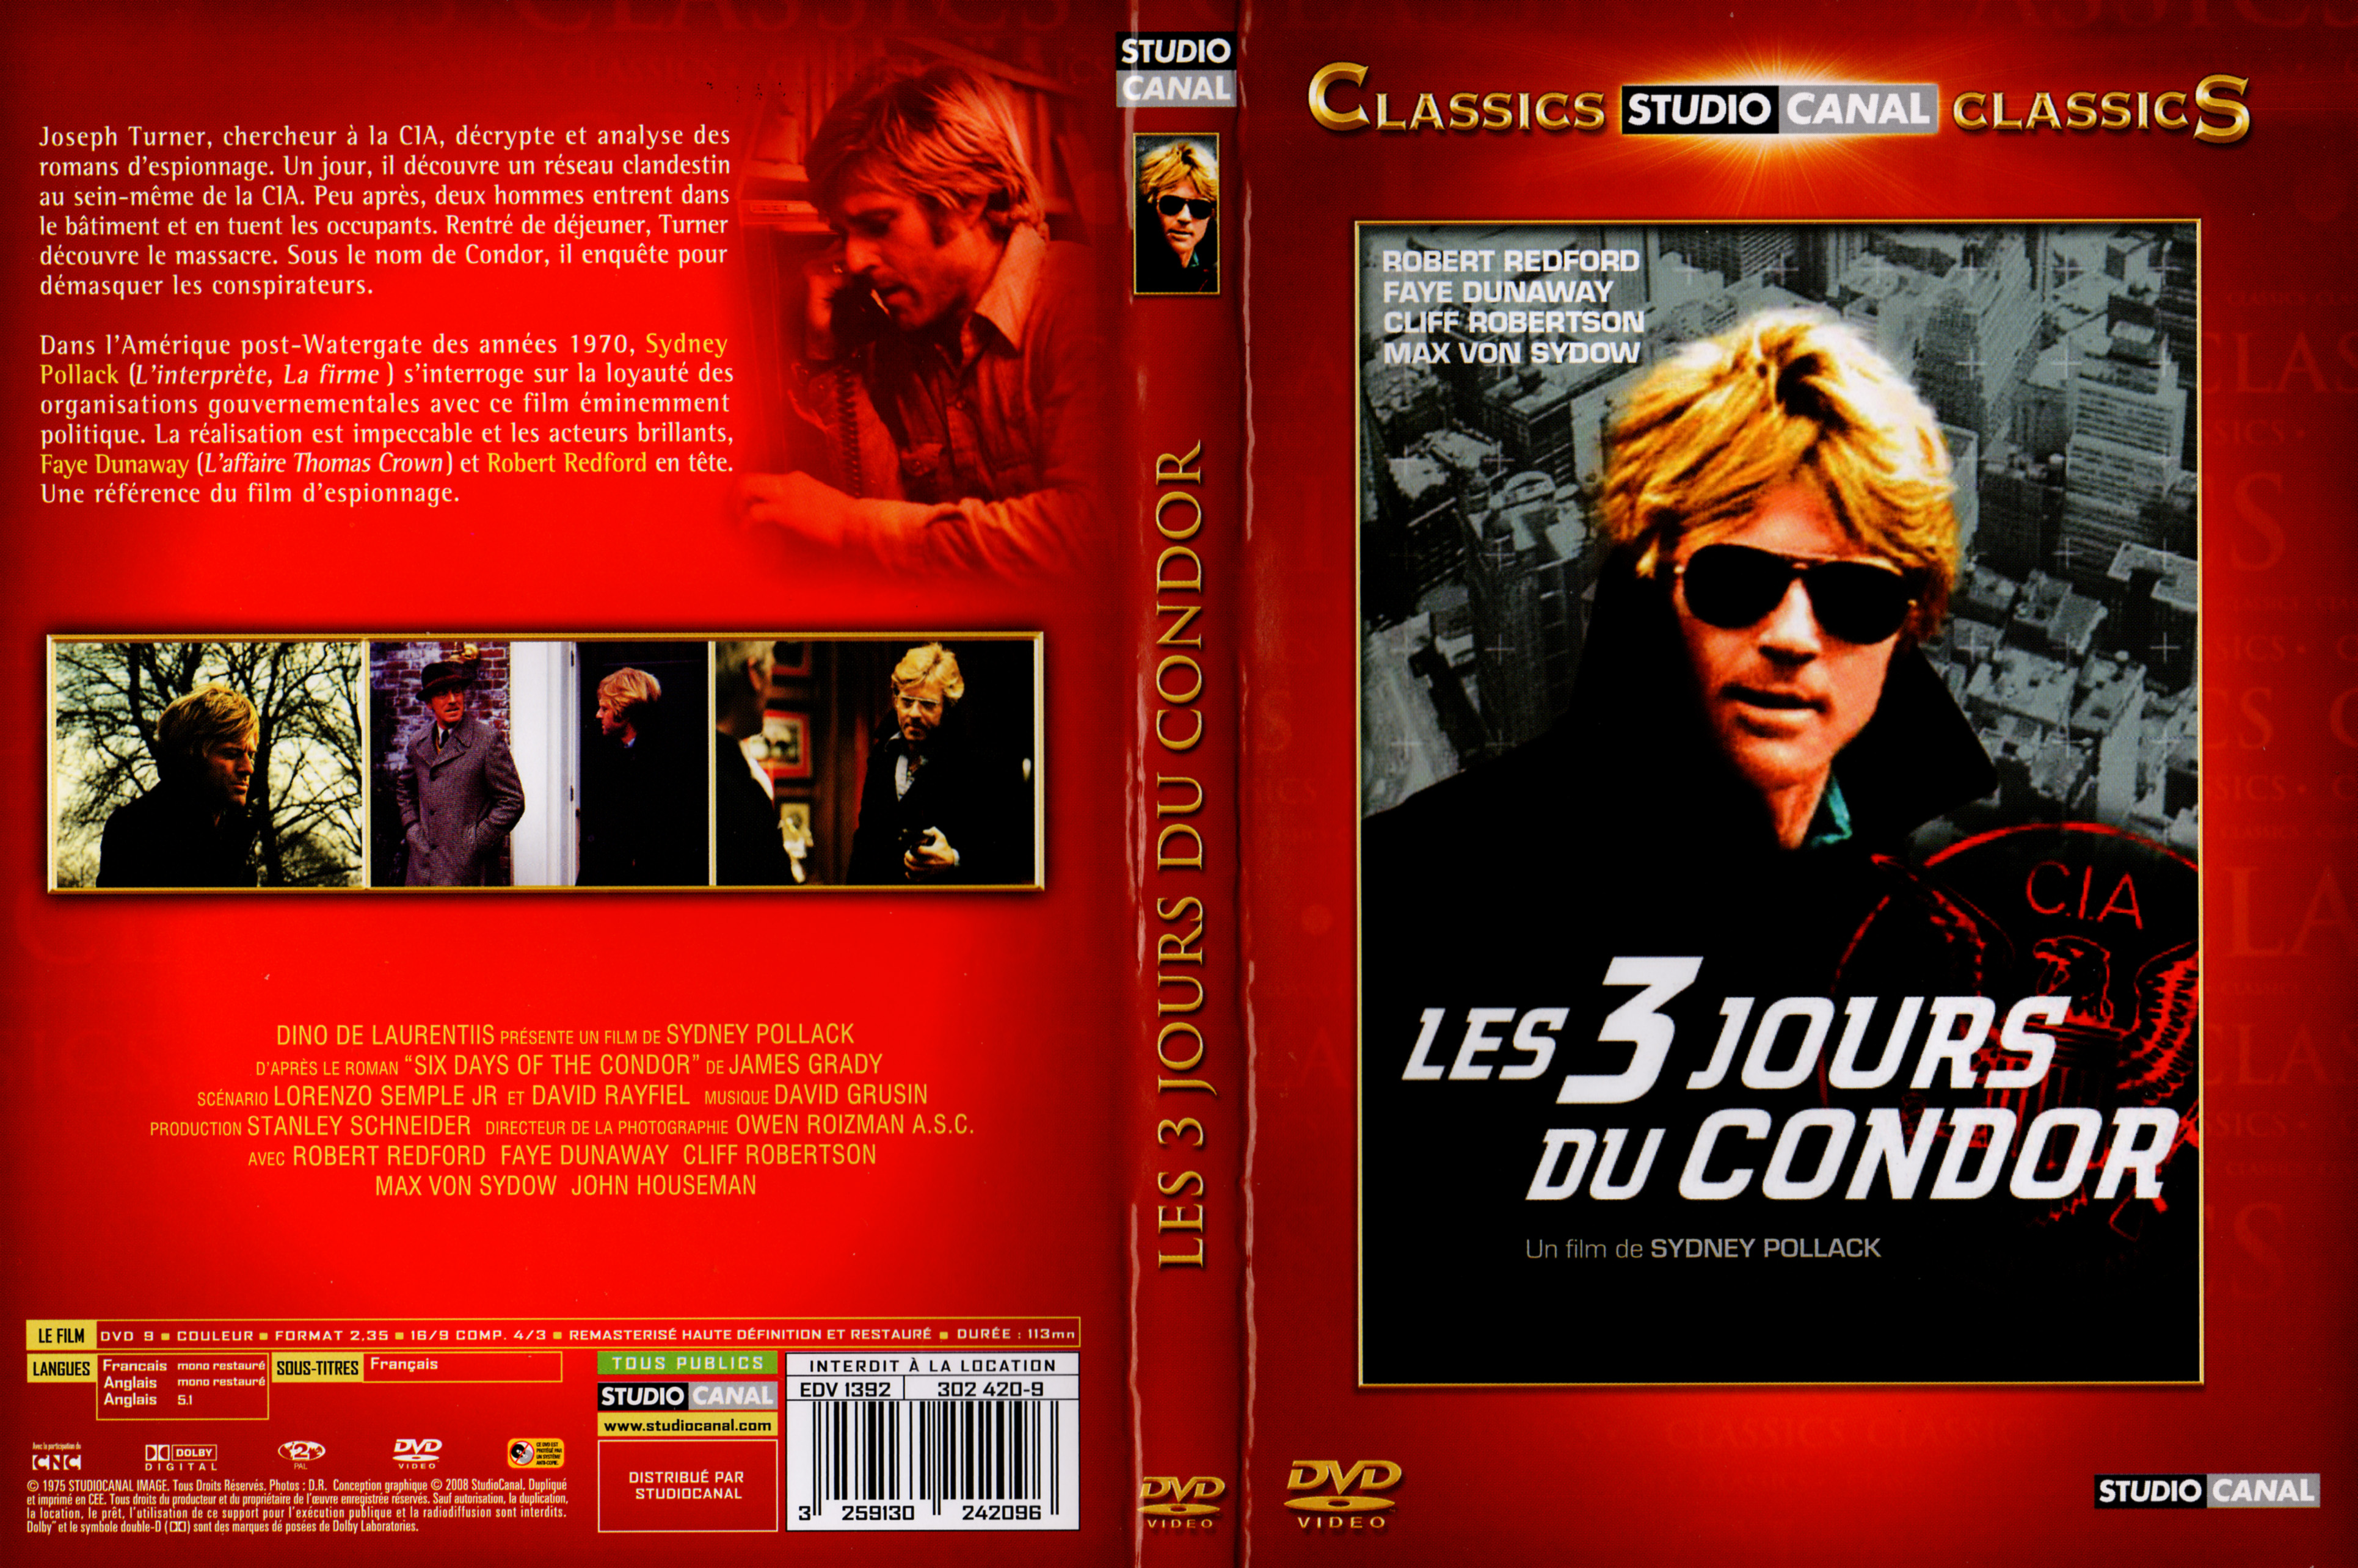 Jaquette DVD Les trois jours du condor v2